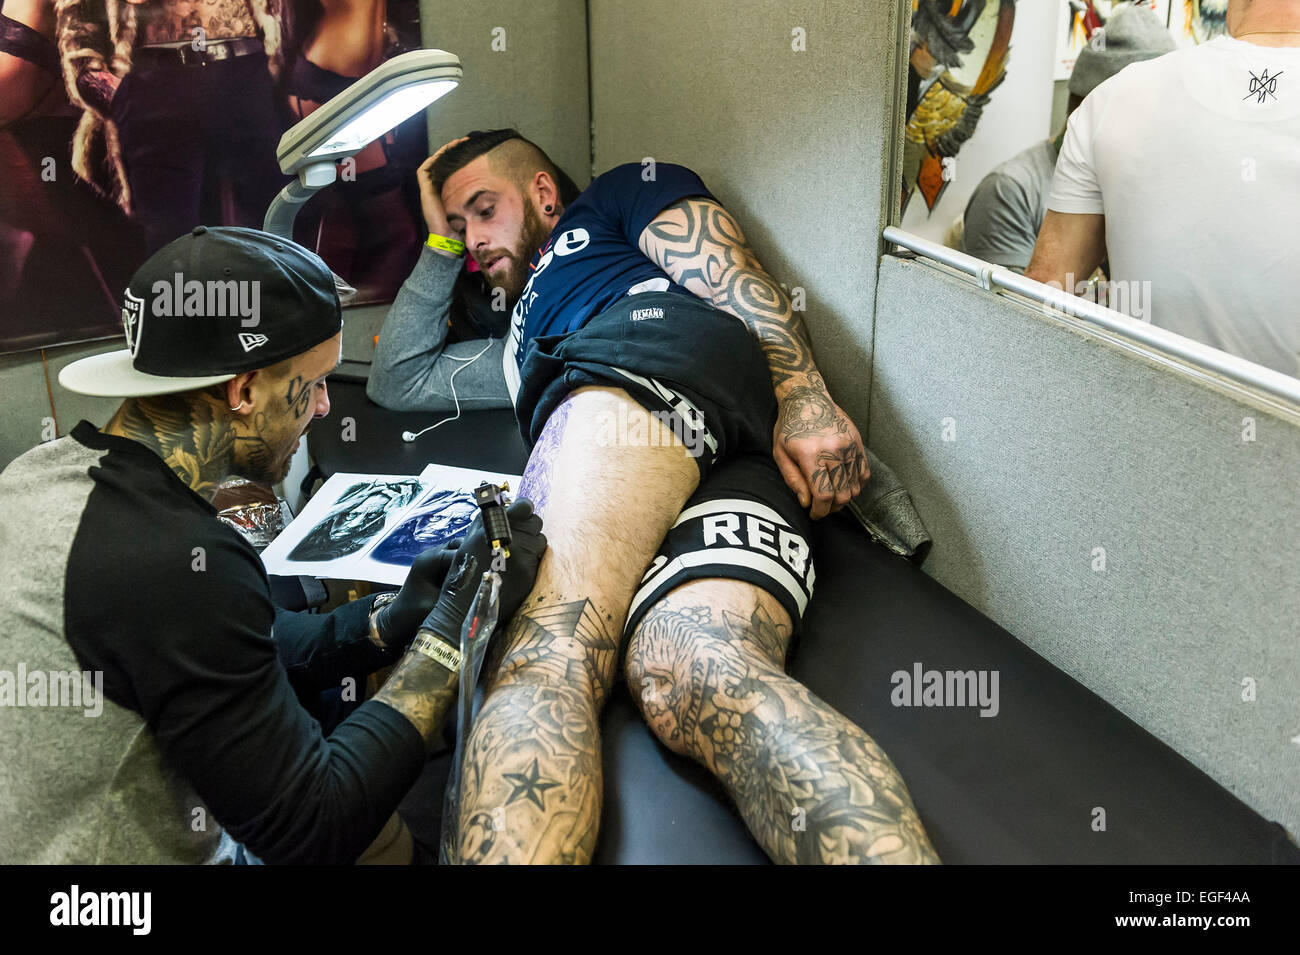 Un homme d'être tatoué sur sa jambe à la Convention de tatouage de Brighton. Banque D'Images